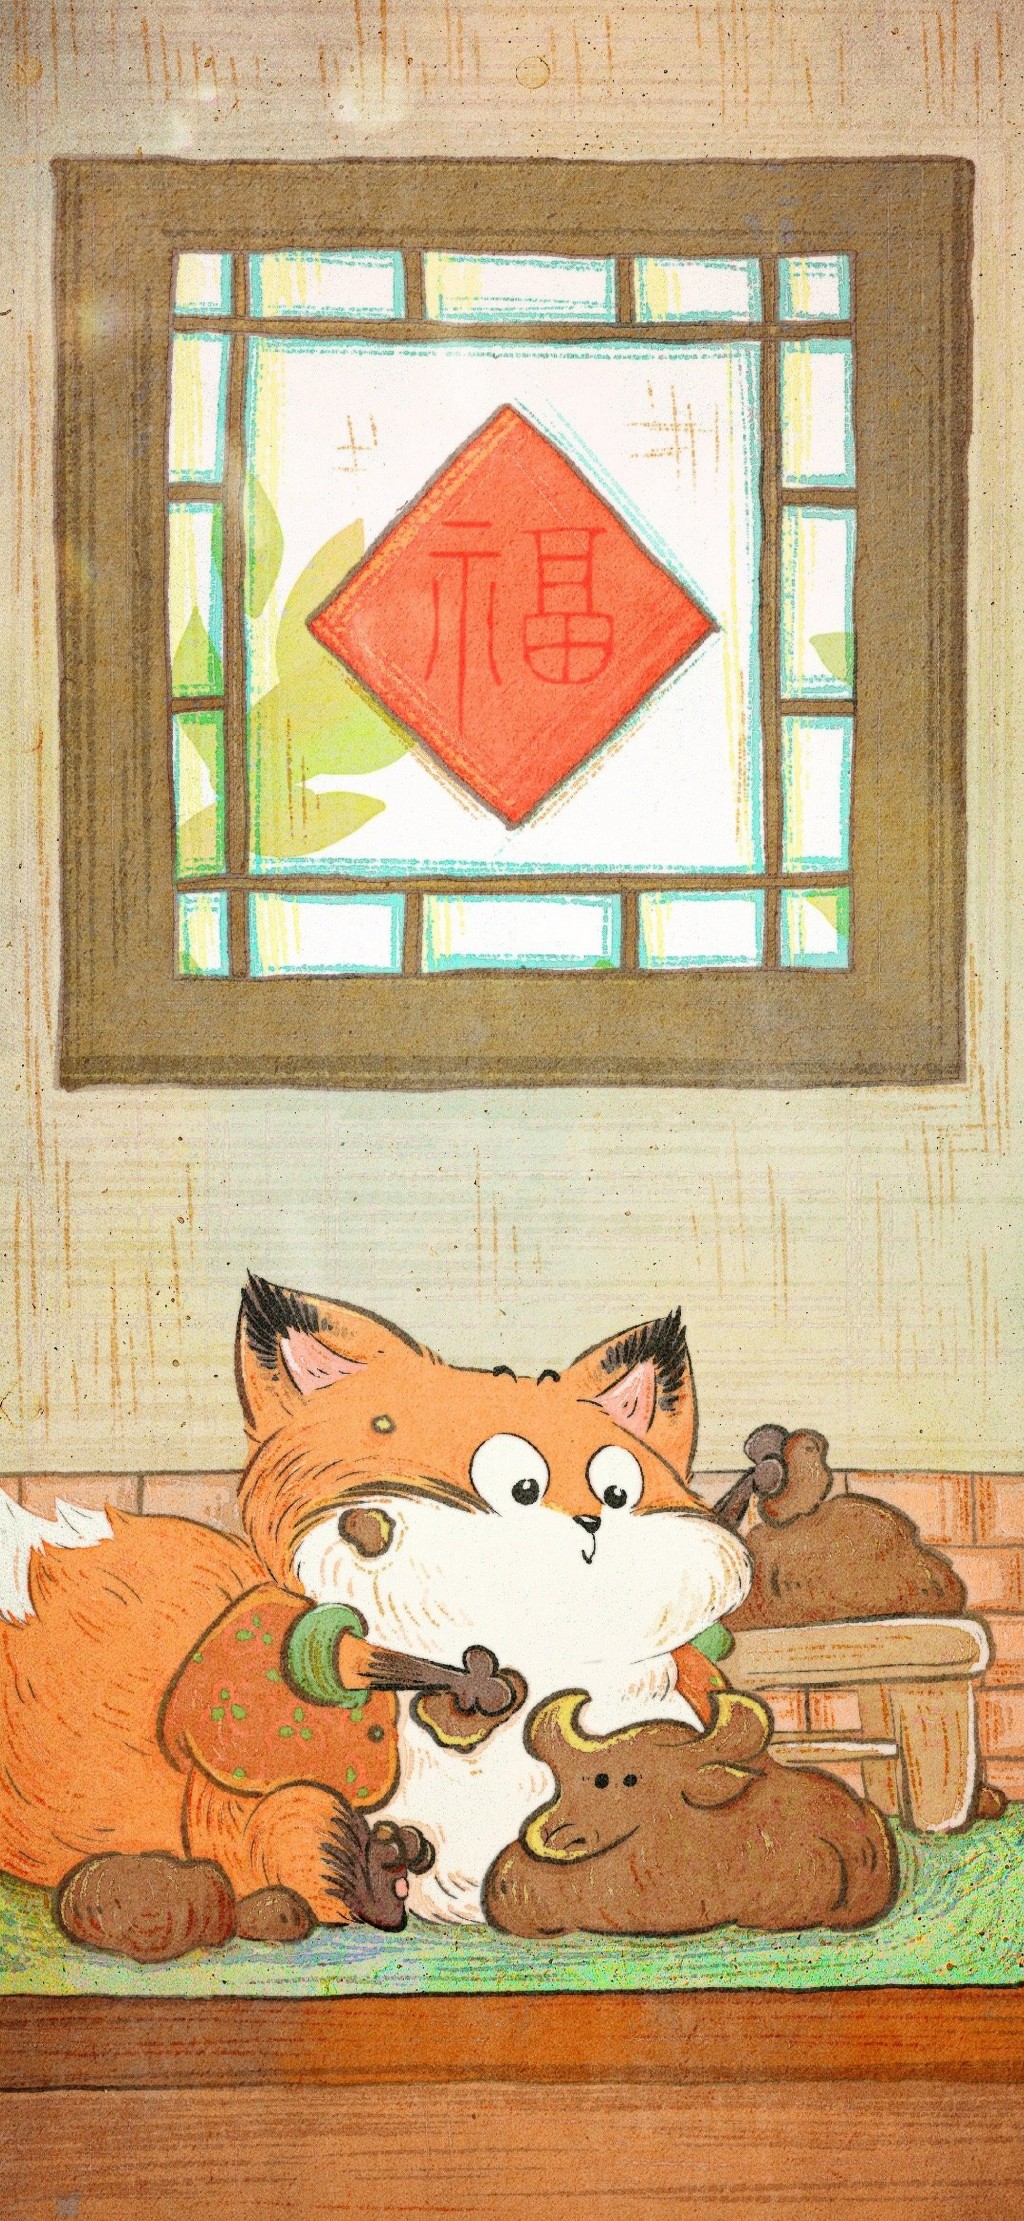 可爱的狐狸卡通插画手机壁纸